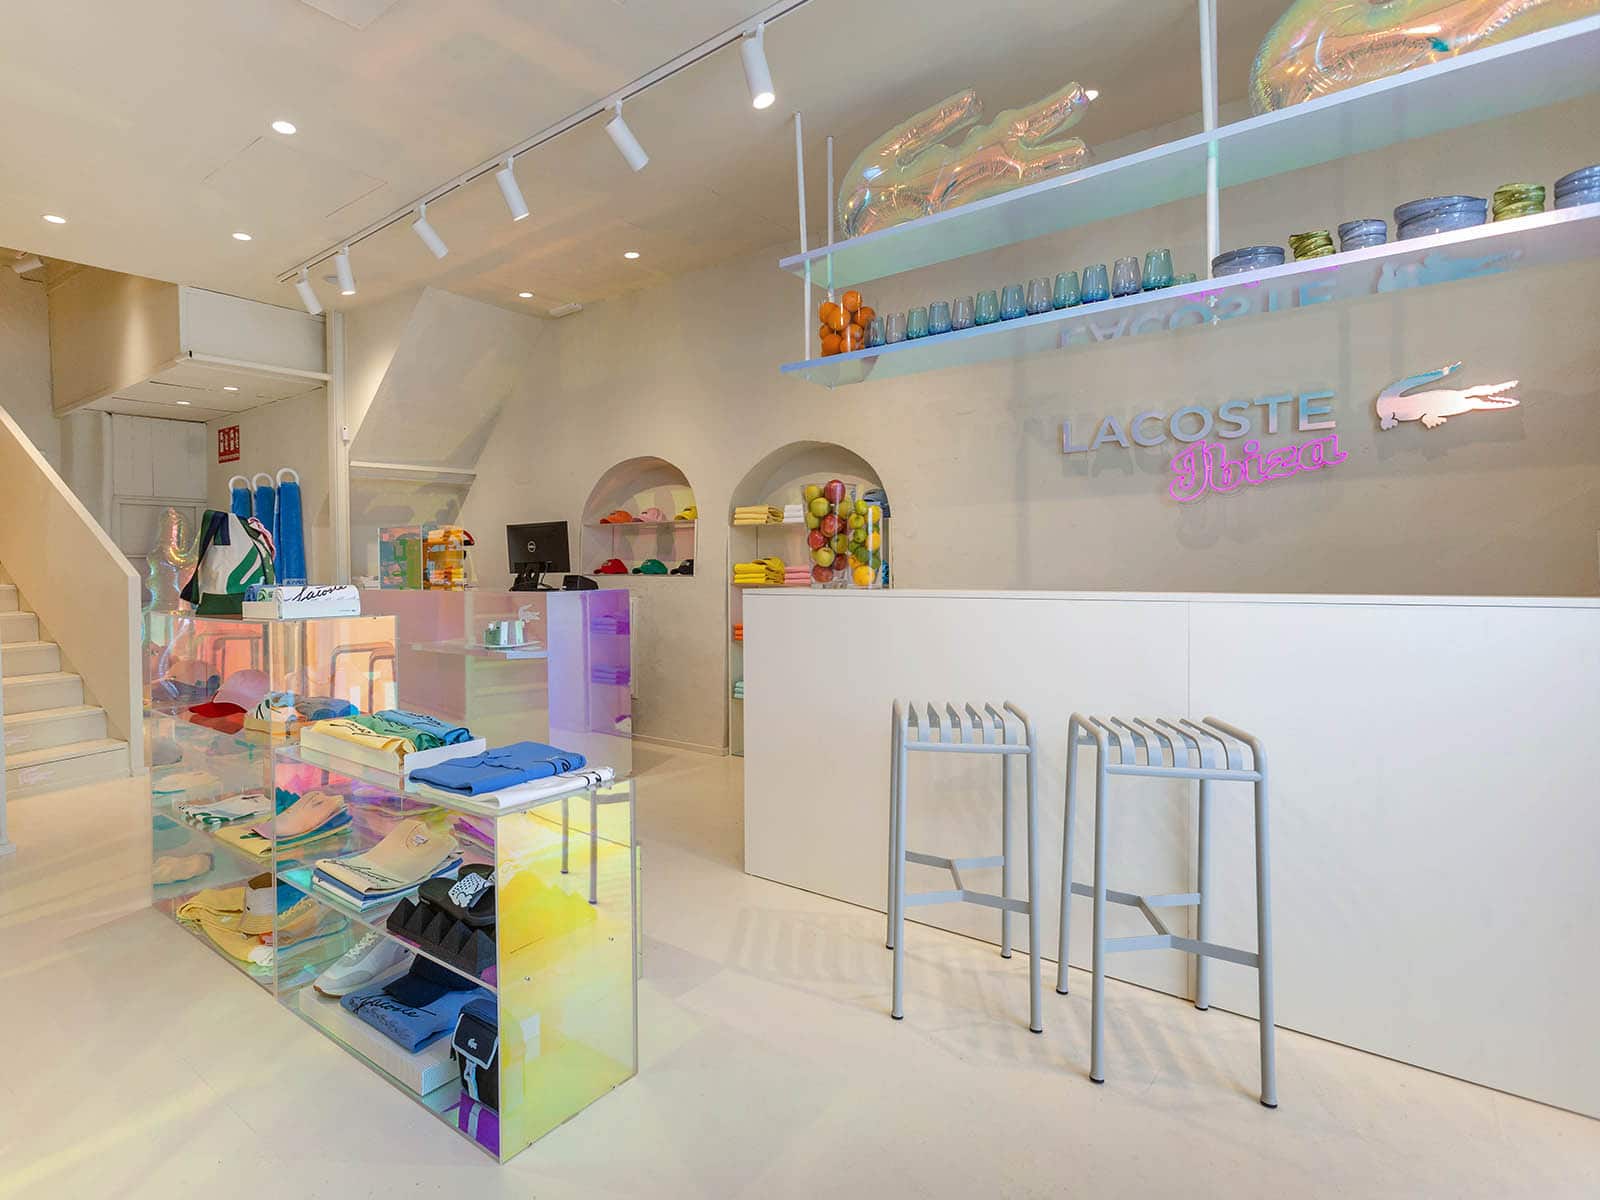 Lacoste aterriza en Ibiza con una tienda pop-up única